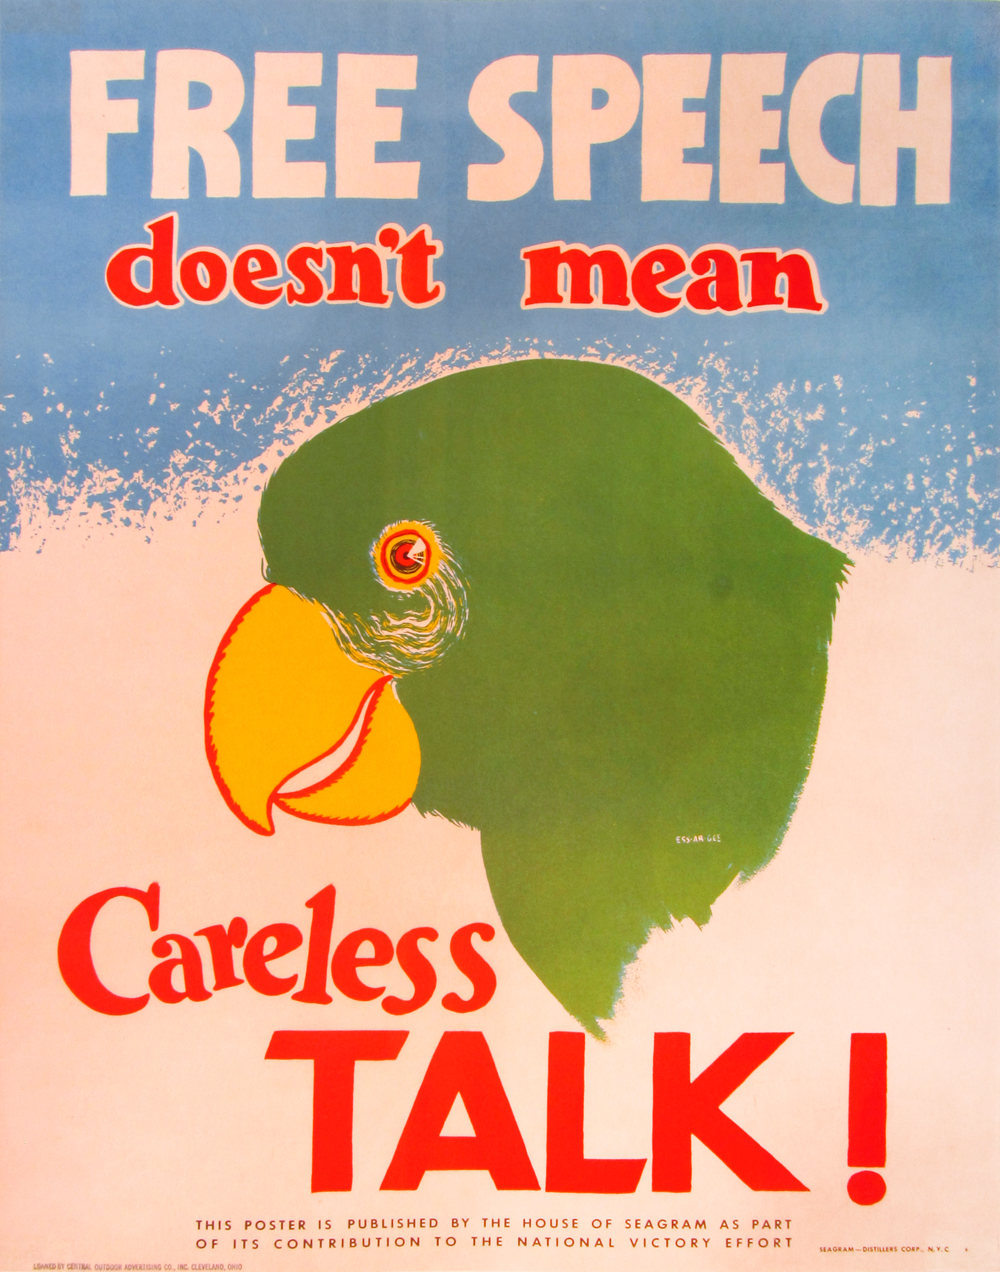 Free Speech Doesn't Mean Careless Talk